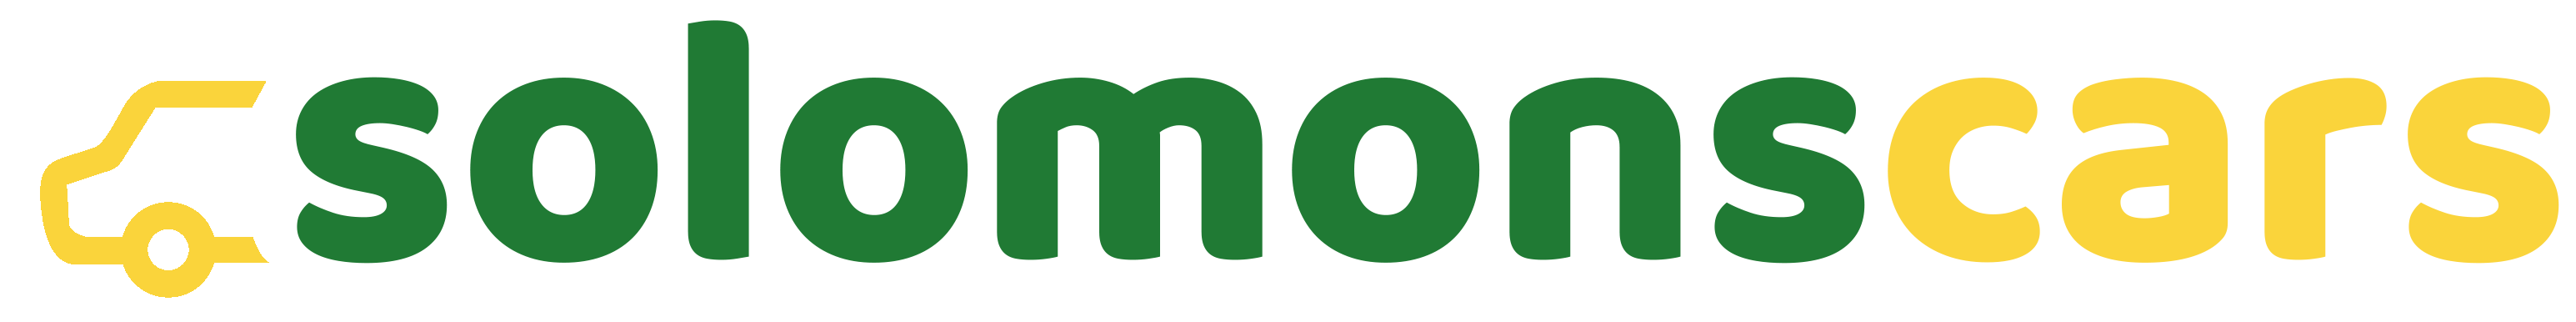 Solomonscars logo